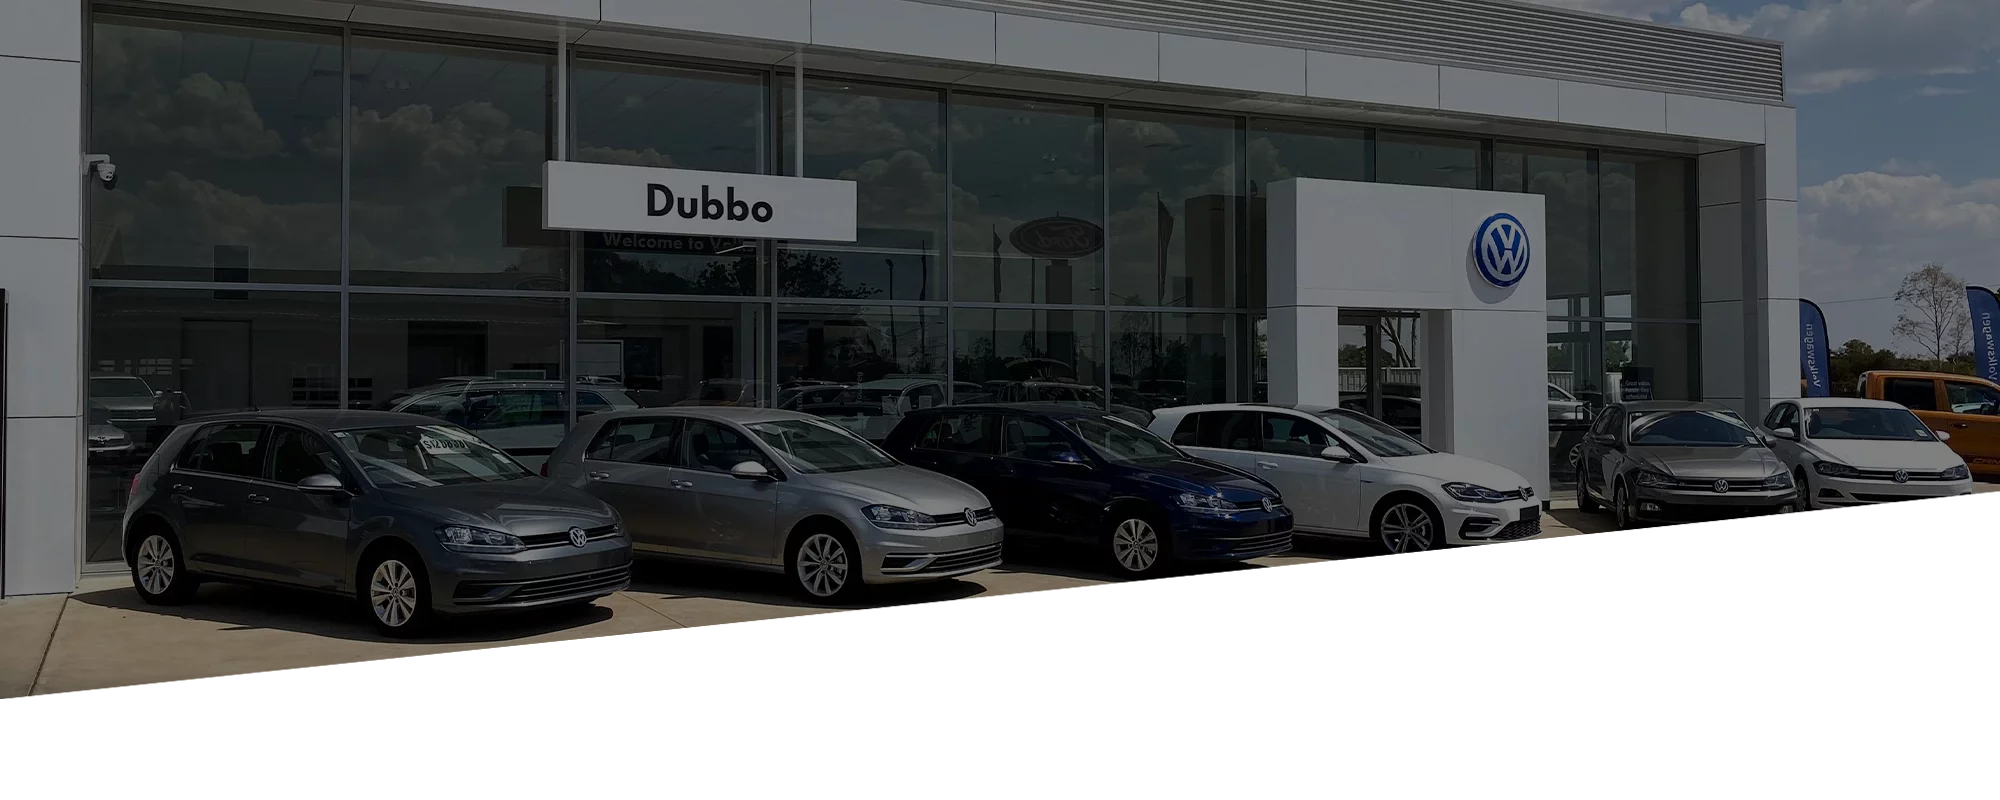 Dubbo Automotive